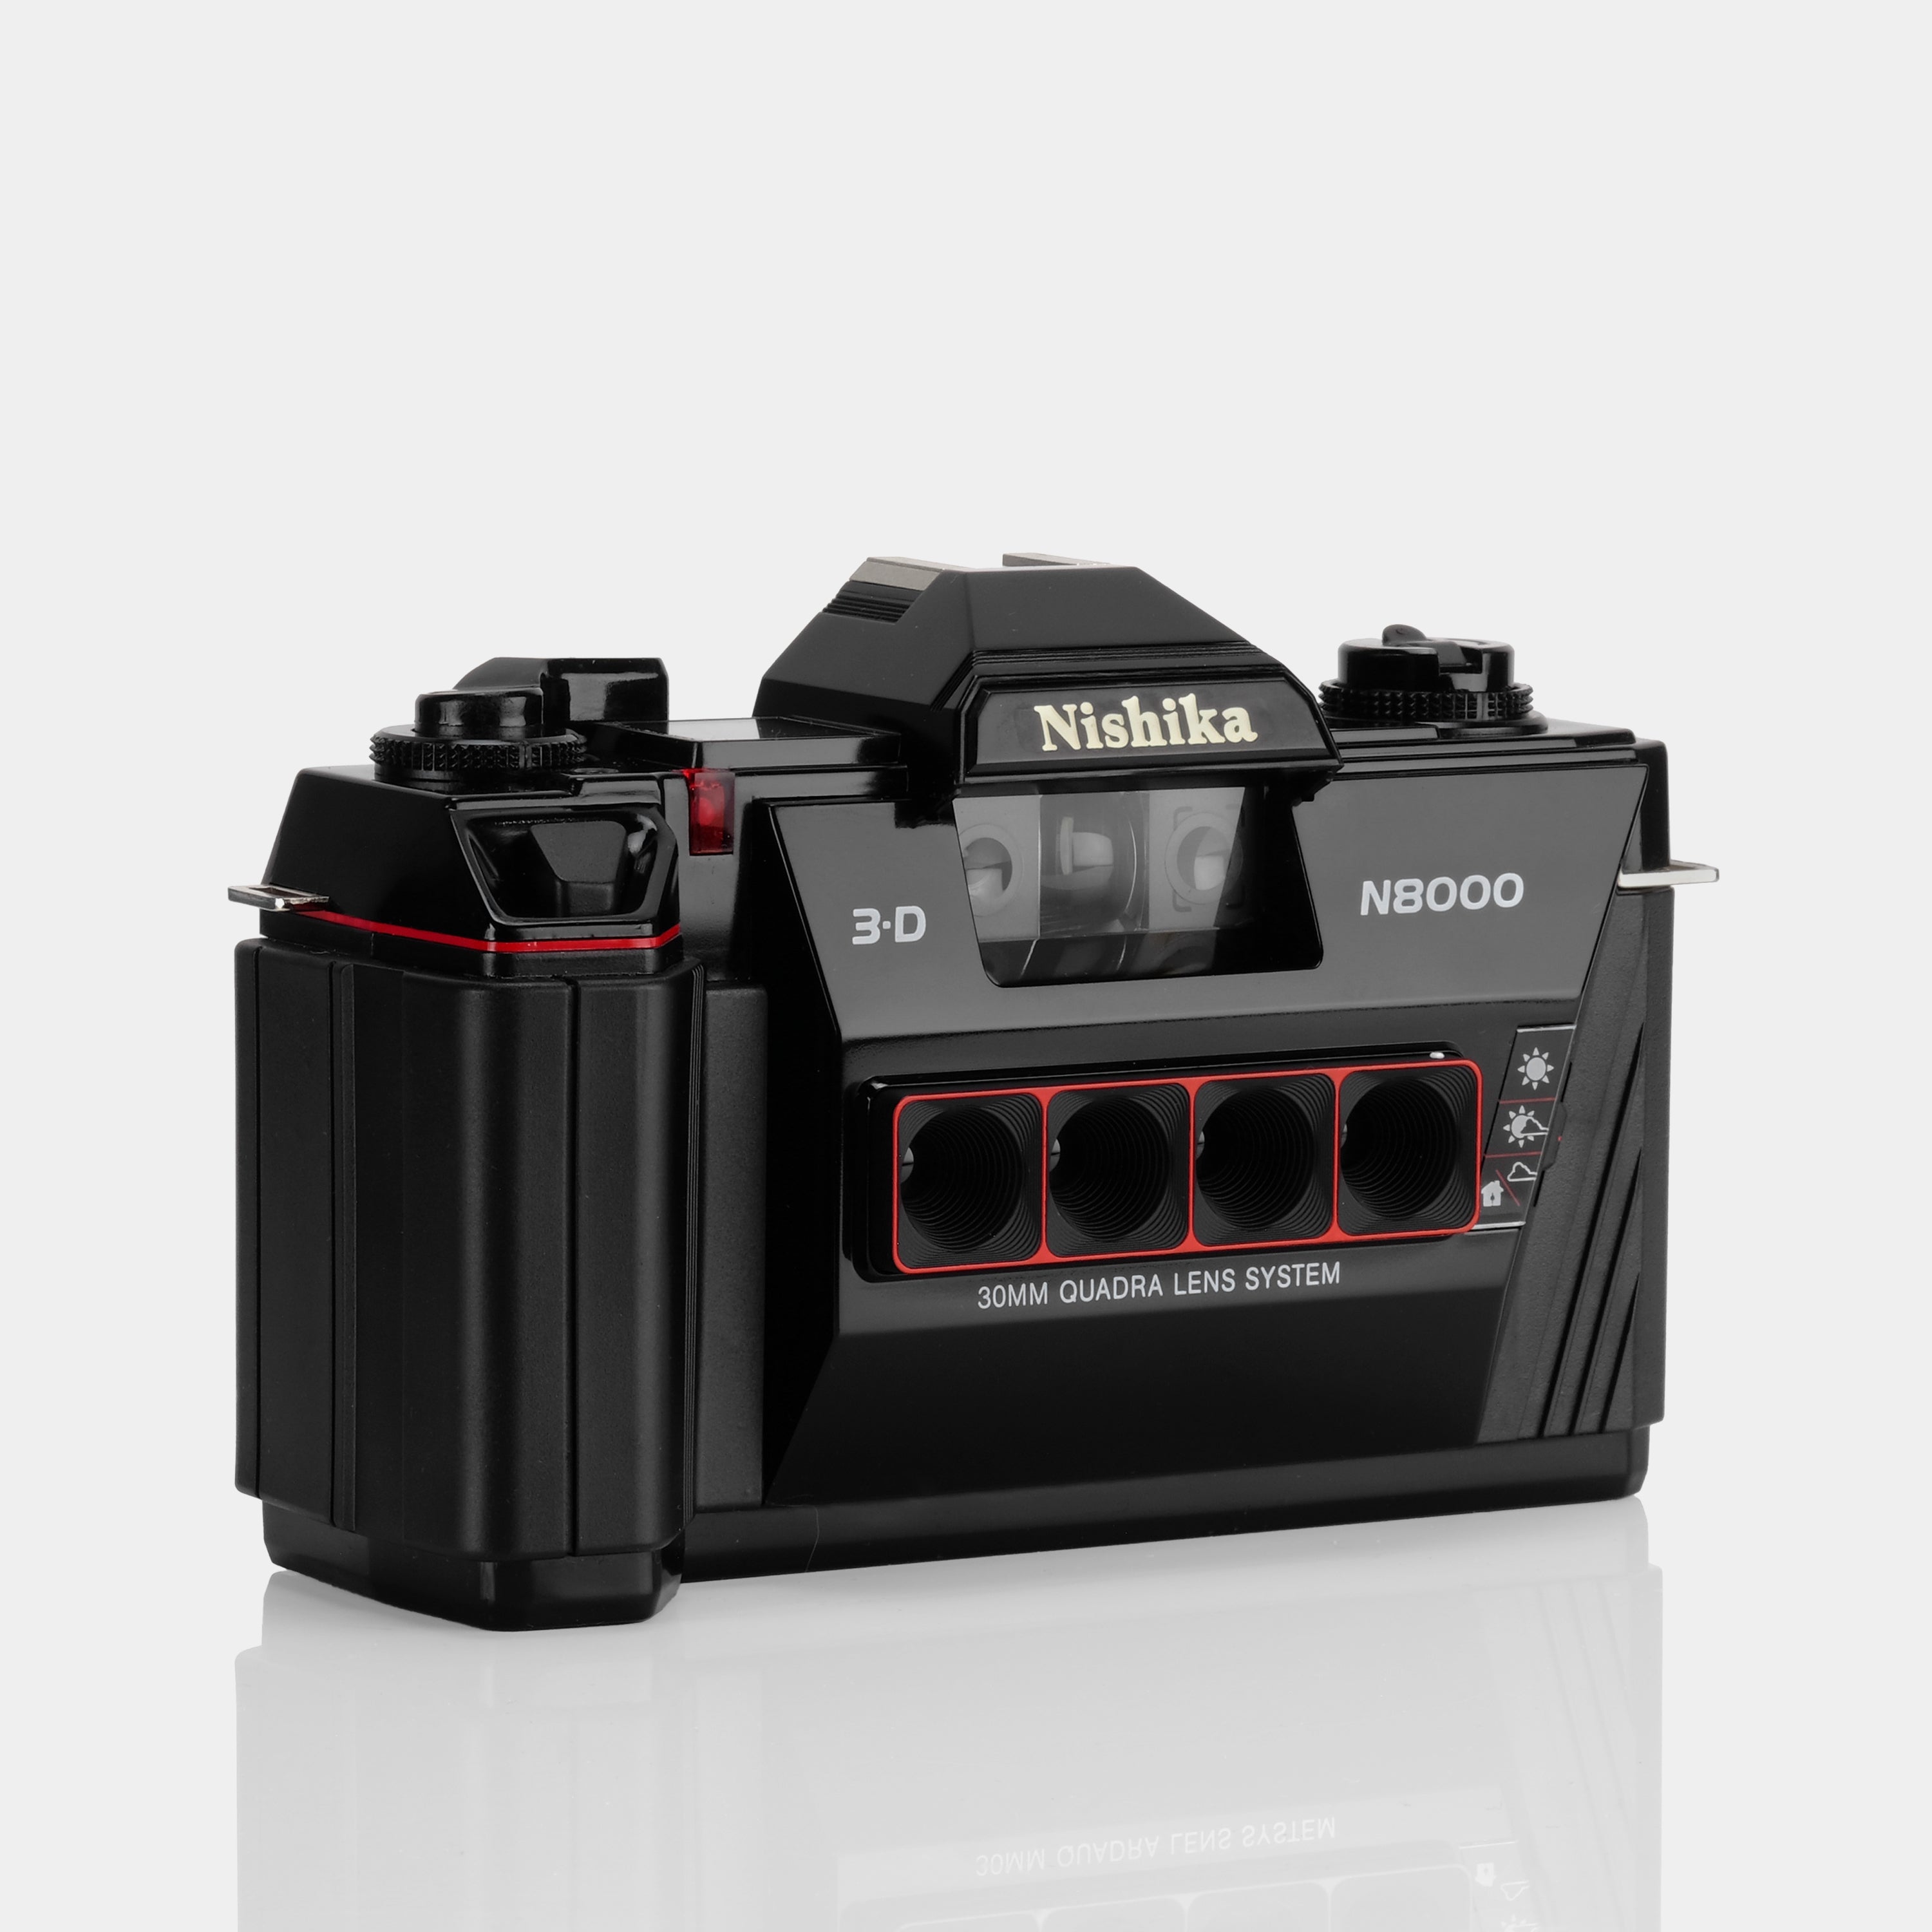 Nishika 3D N8000 35mm Film Camera with Accessories